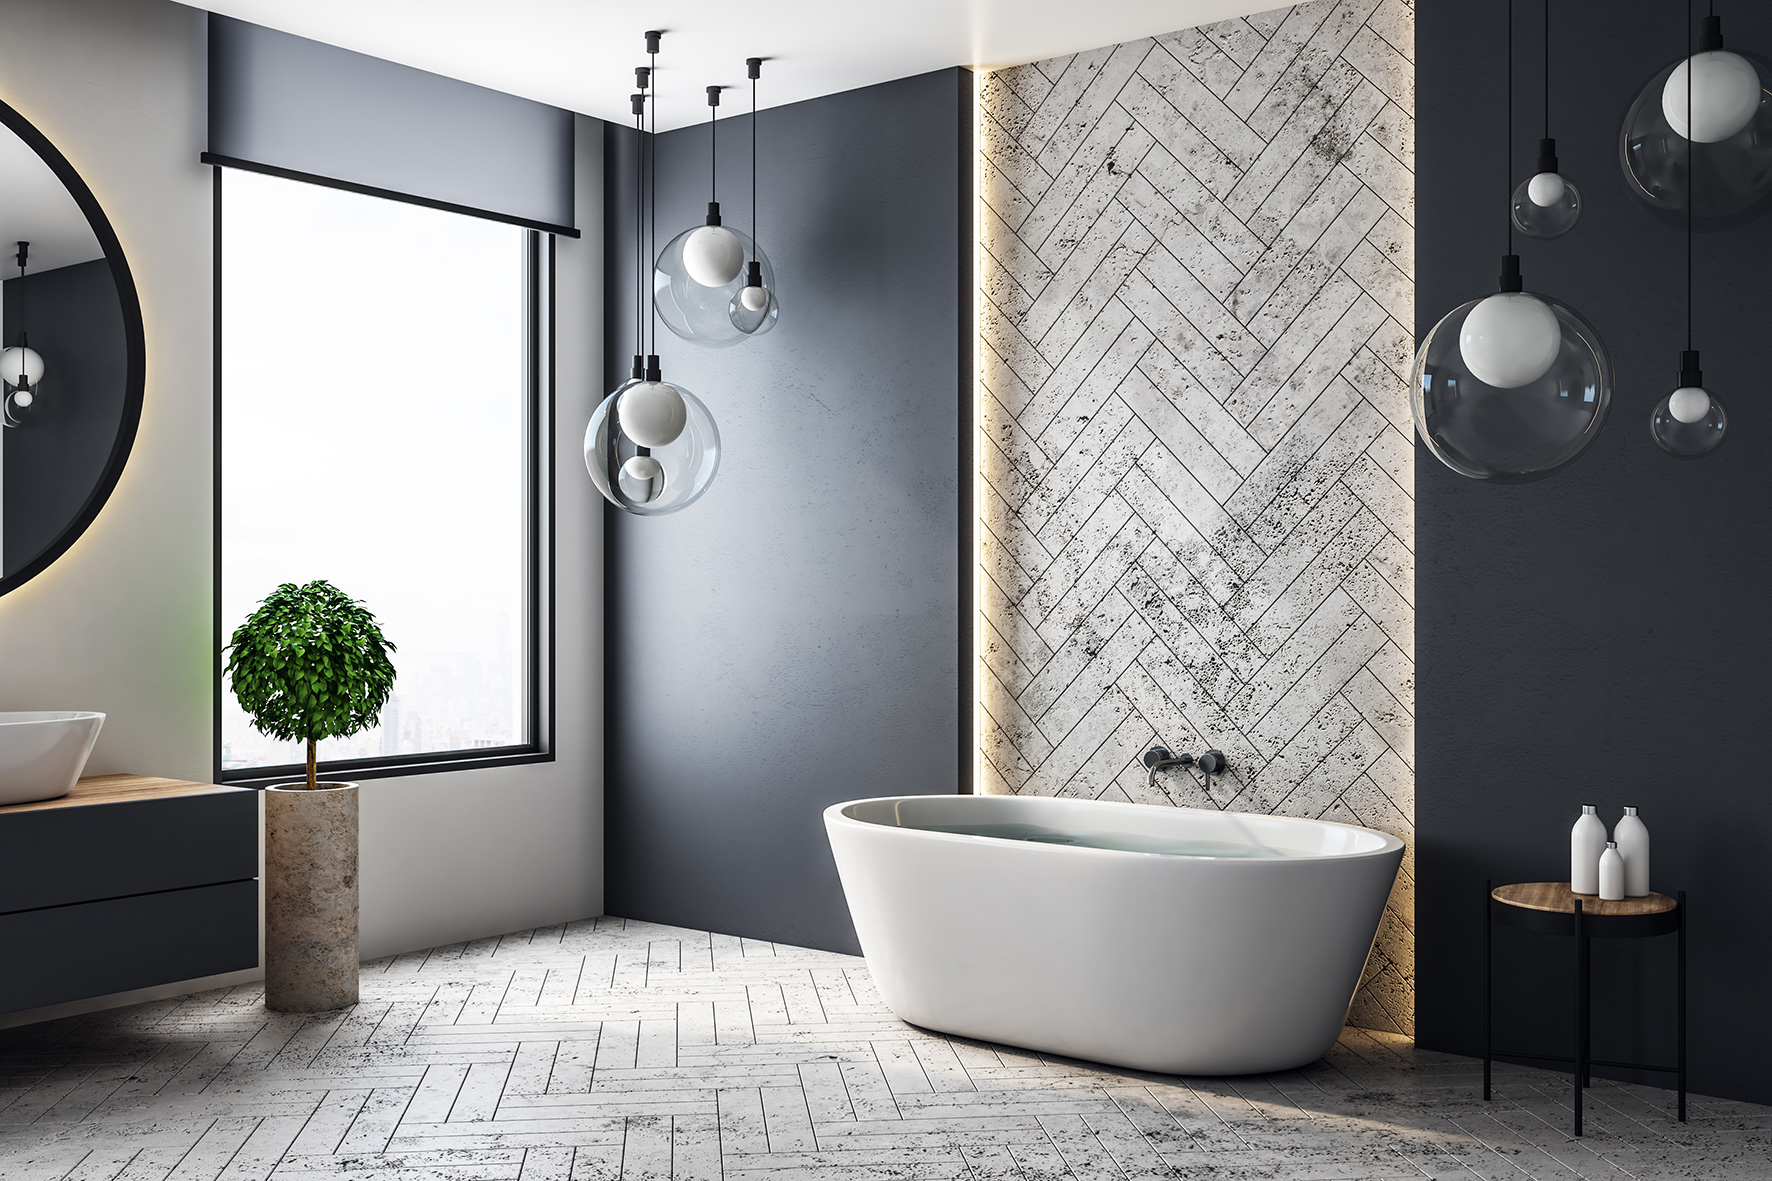 Luxury contemporary bathroom herringbone tiles